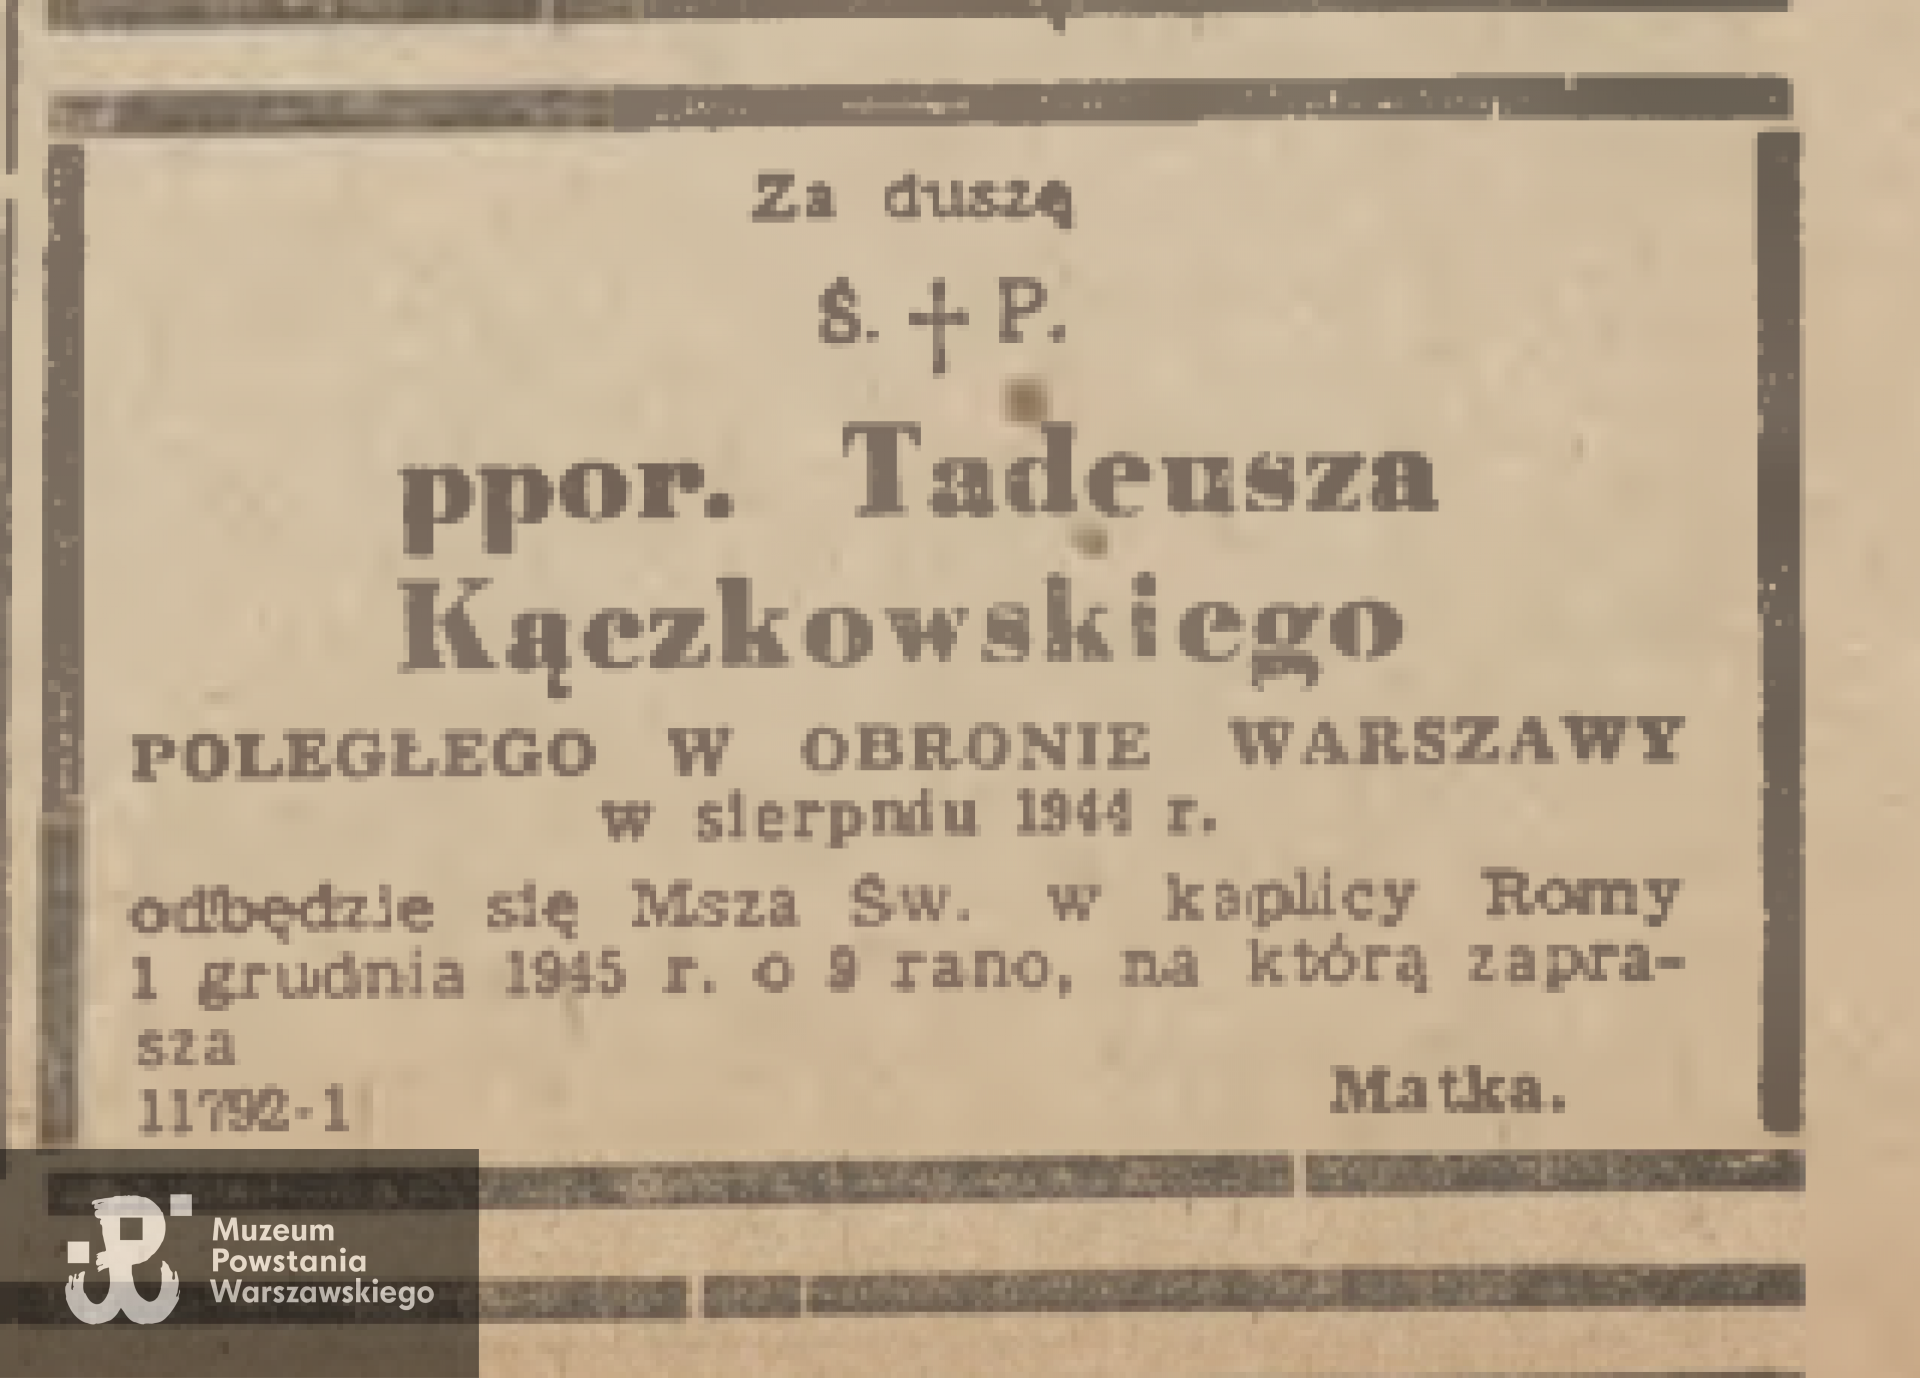 Życie Warszawy, nr 324 (393) z 23.11.1945 roku, s. 4